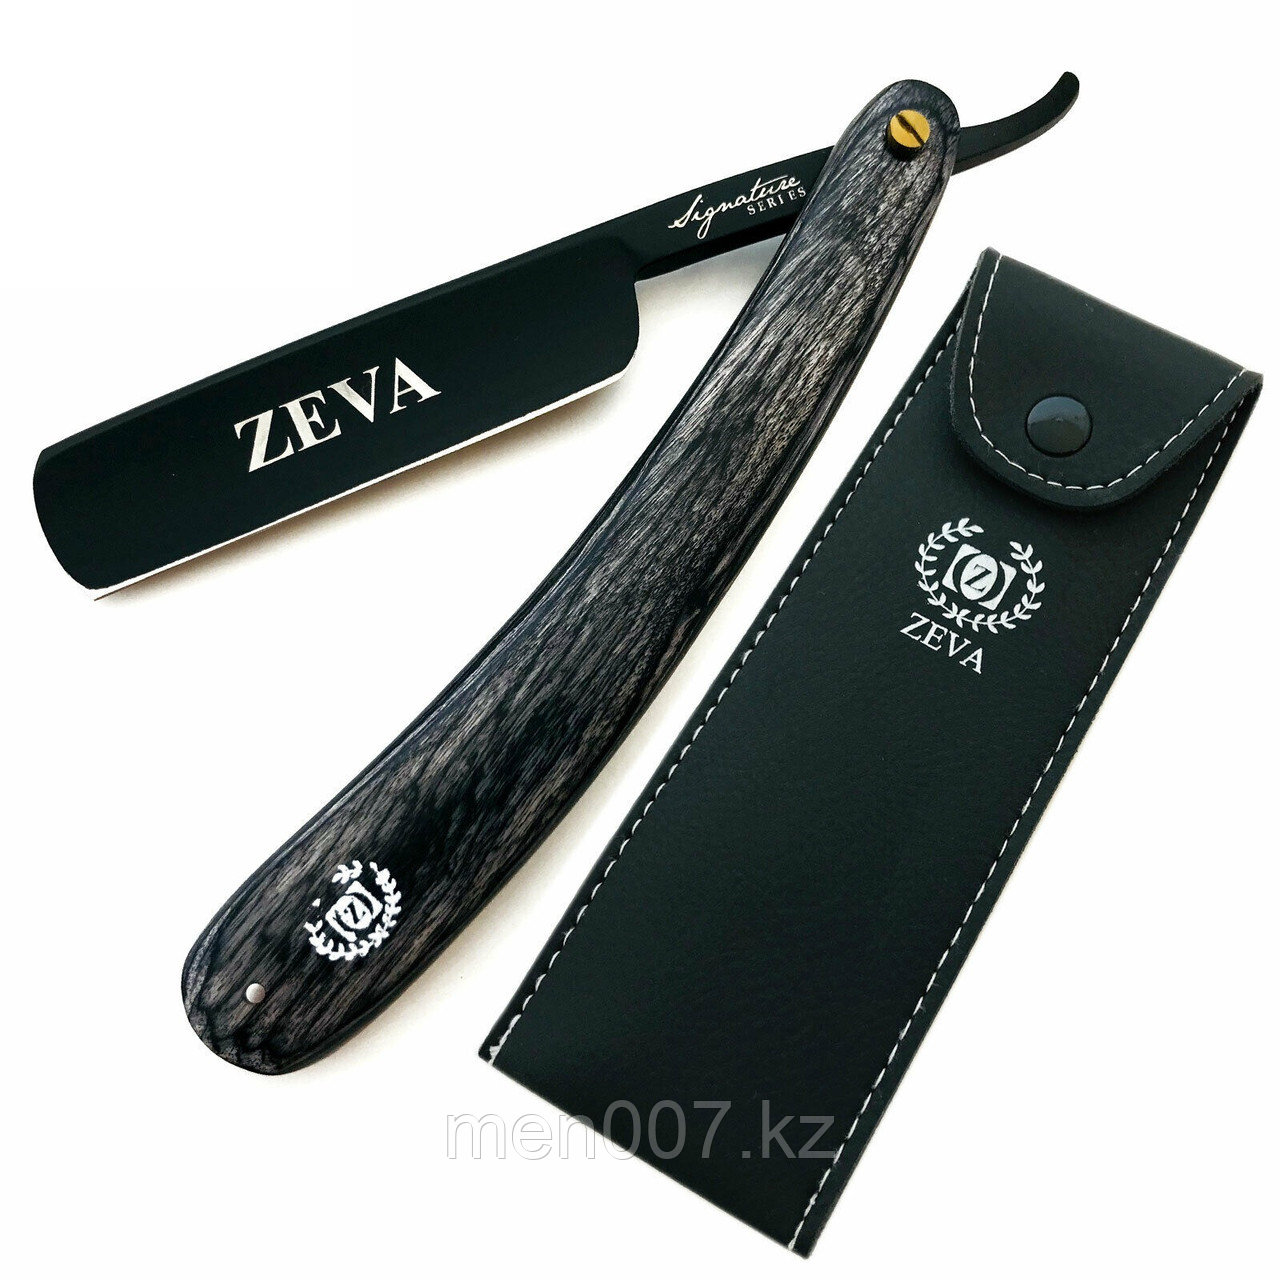 Опасная бритва Zeva (затачиваемая черно-серая США)